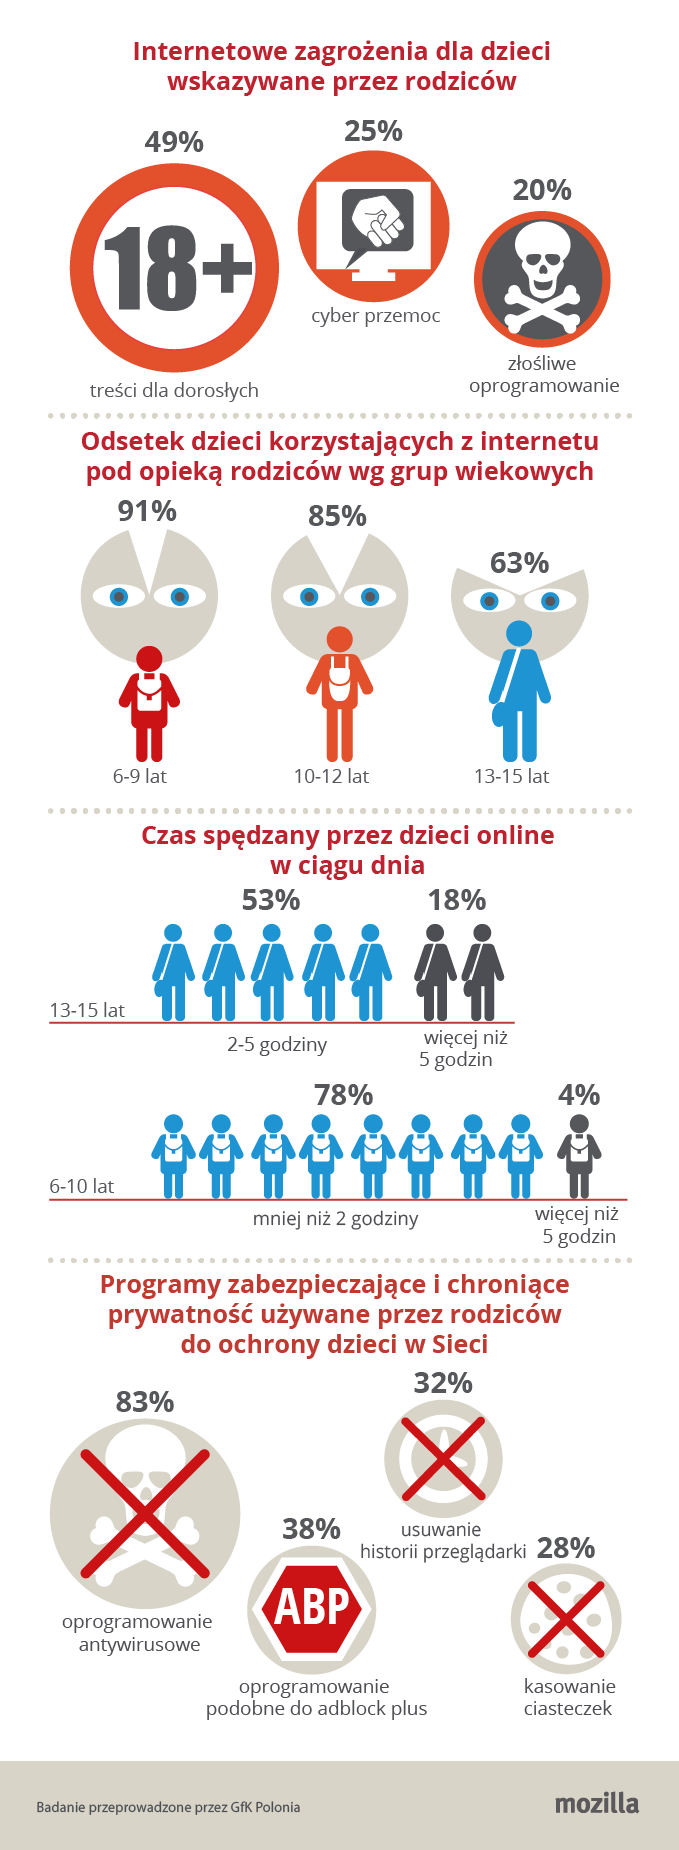 Treści Dla Dorosłych I Cyberprzemoc Największym Zmartwieniem Rodziców W Polsce Infografika